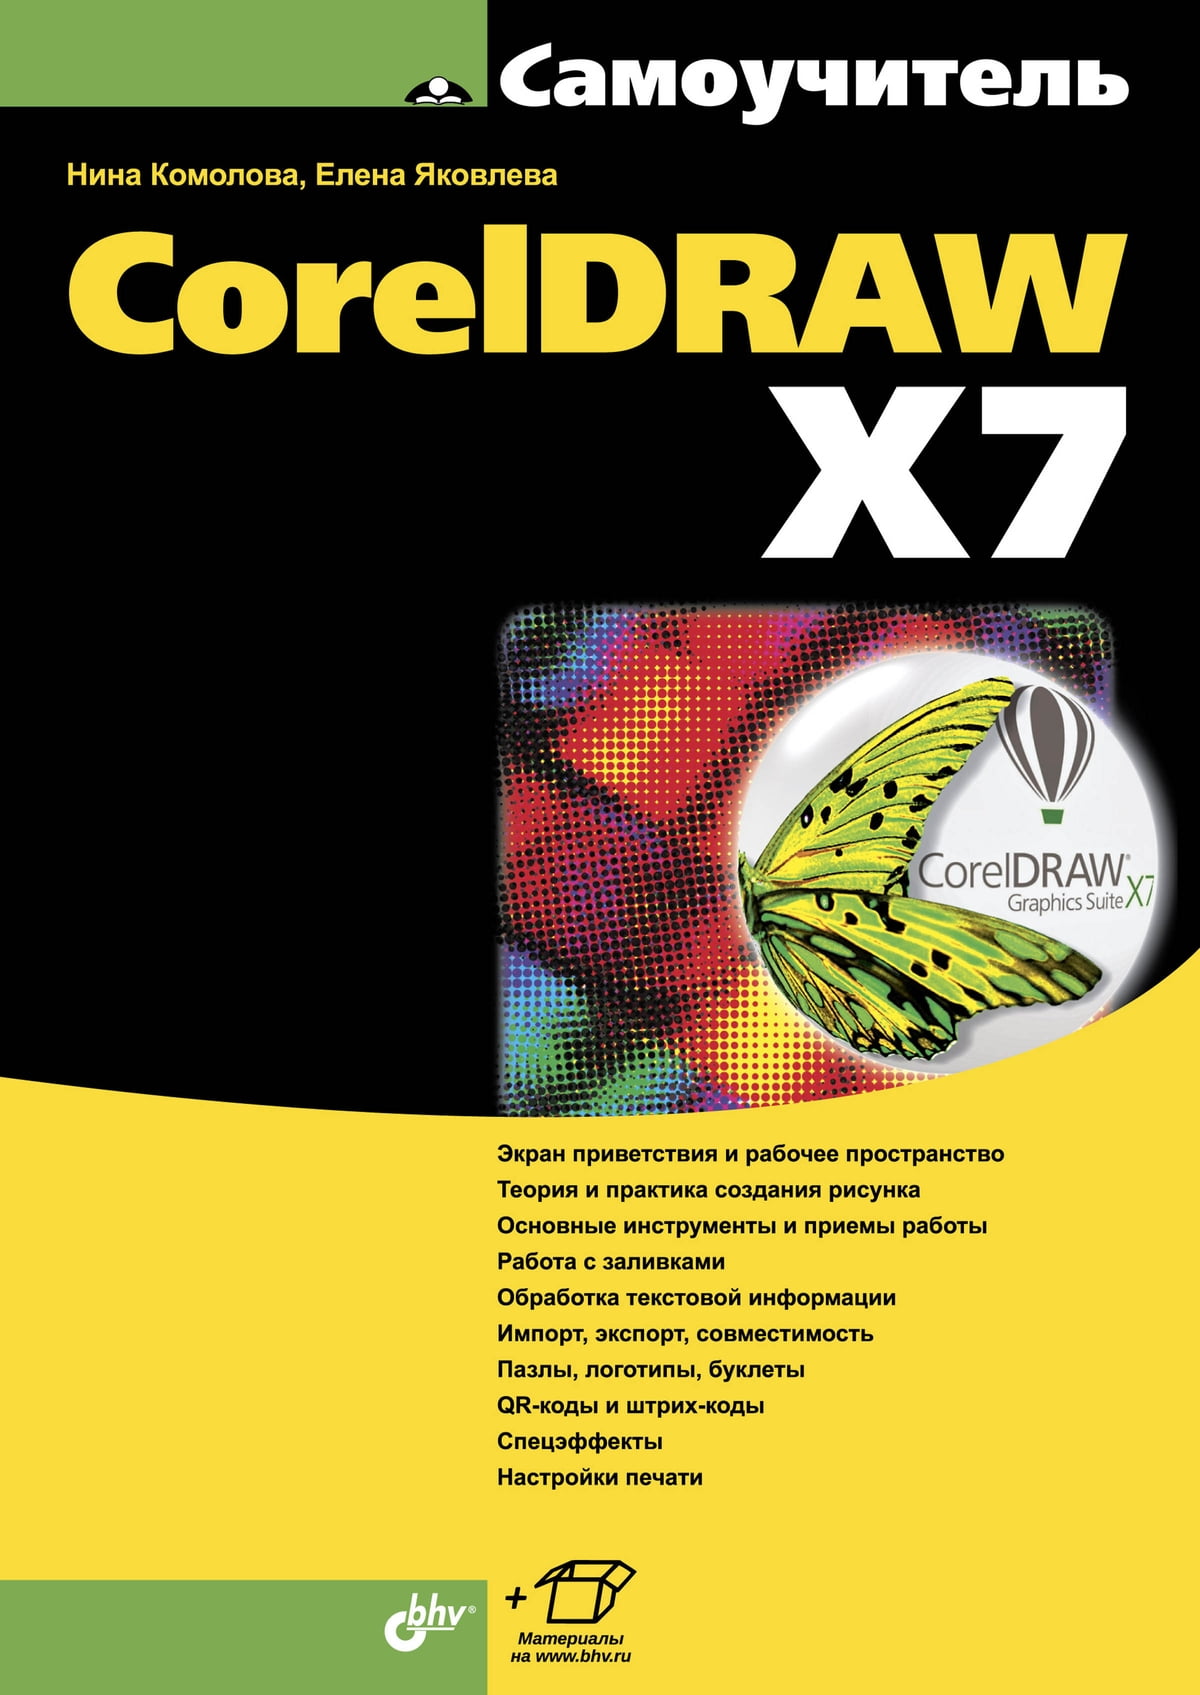  ..  CorelDRAW X7 